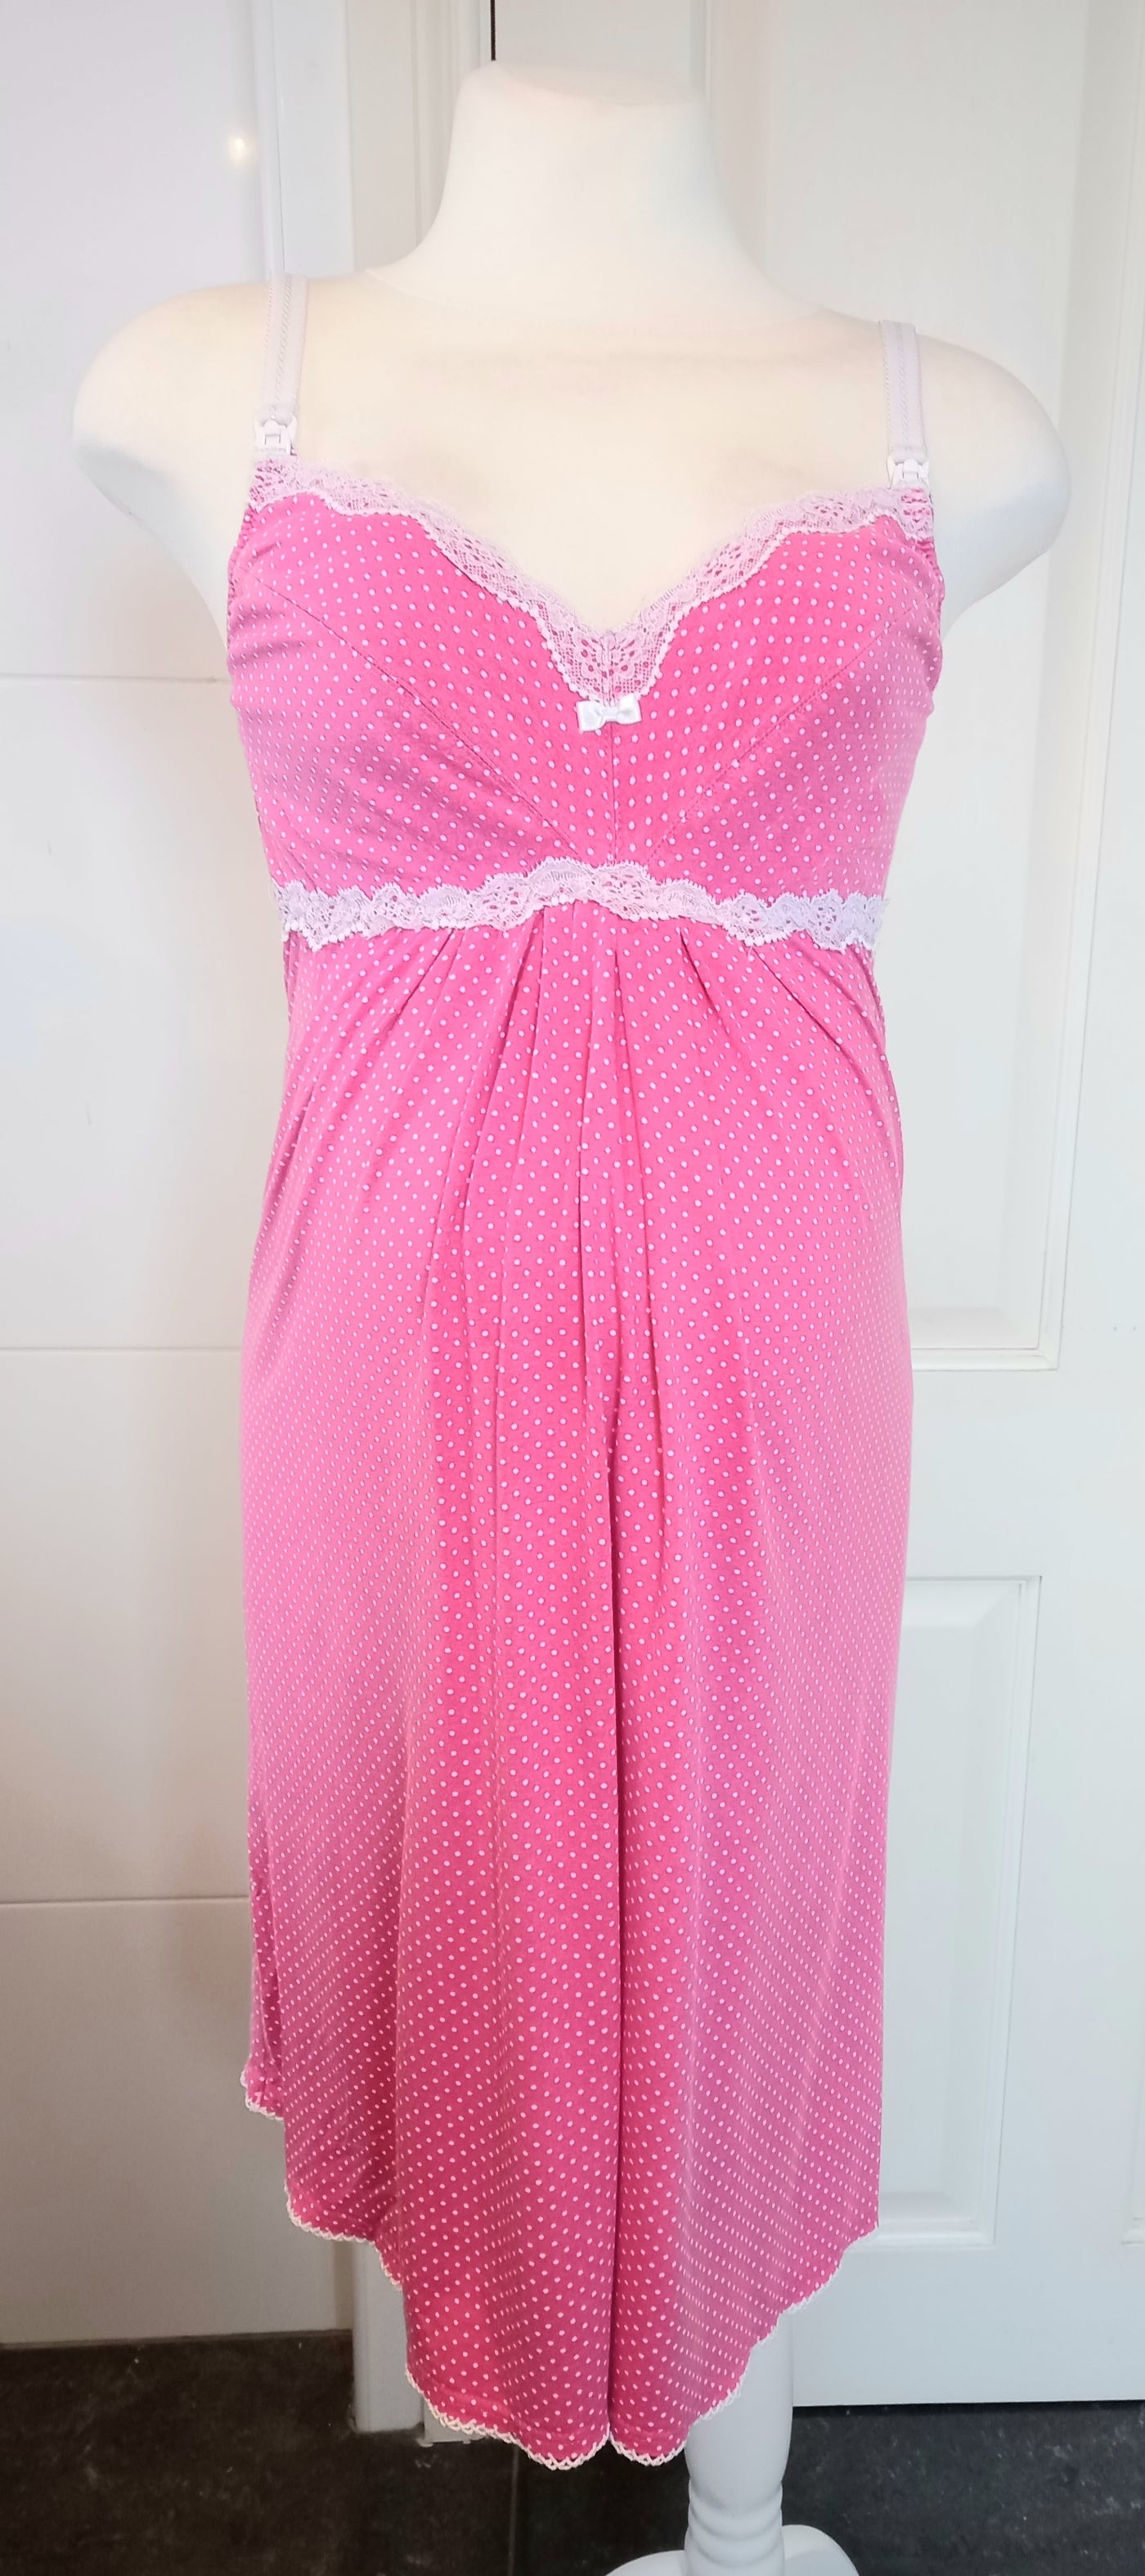 BeMammy Pink & White Polkadot Nursing Nightdress - Size L (Approx. UK 10/12)